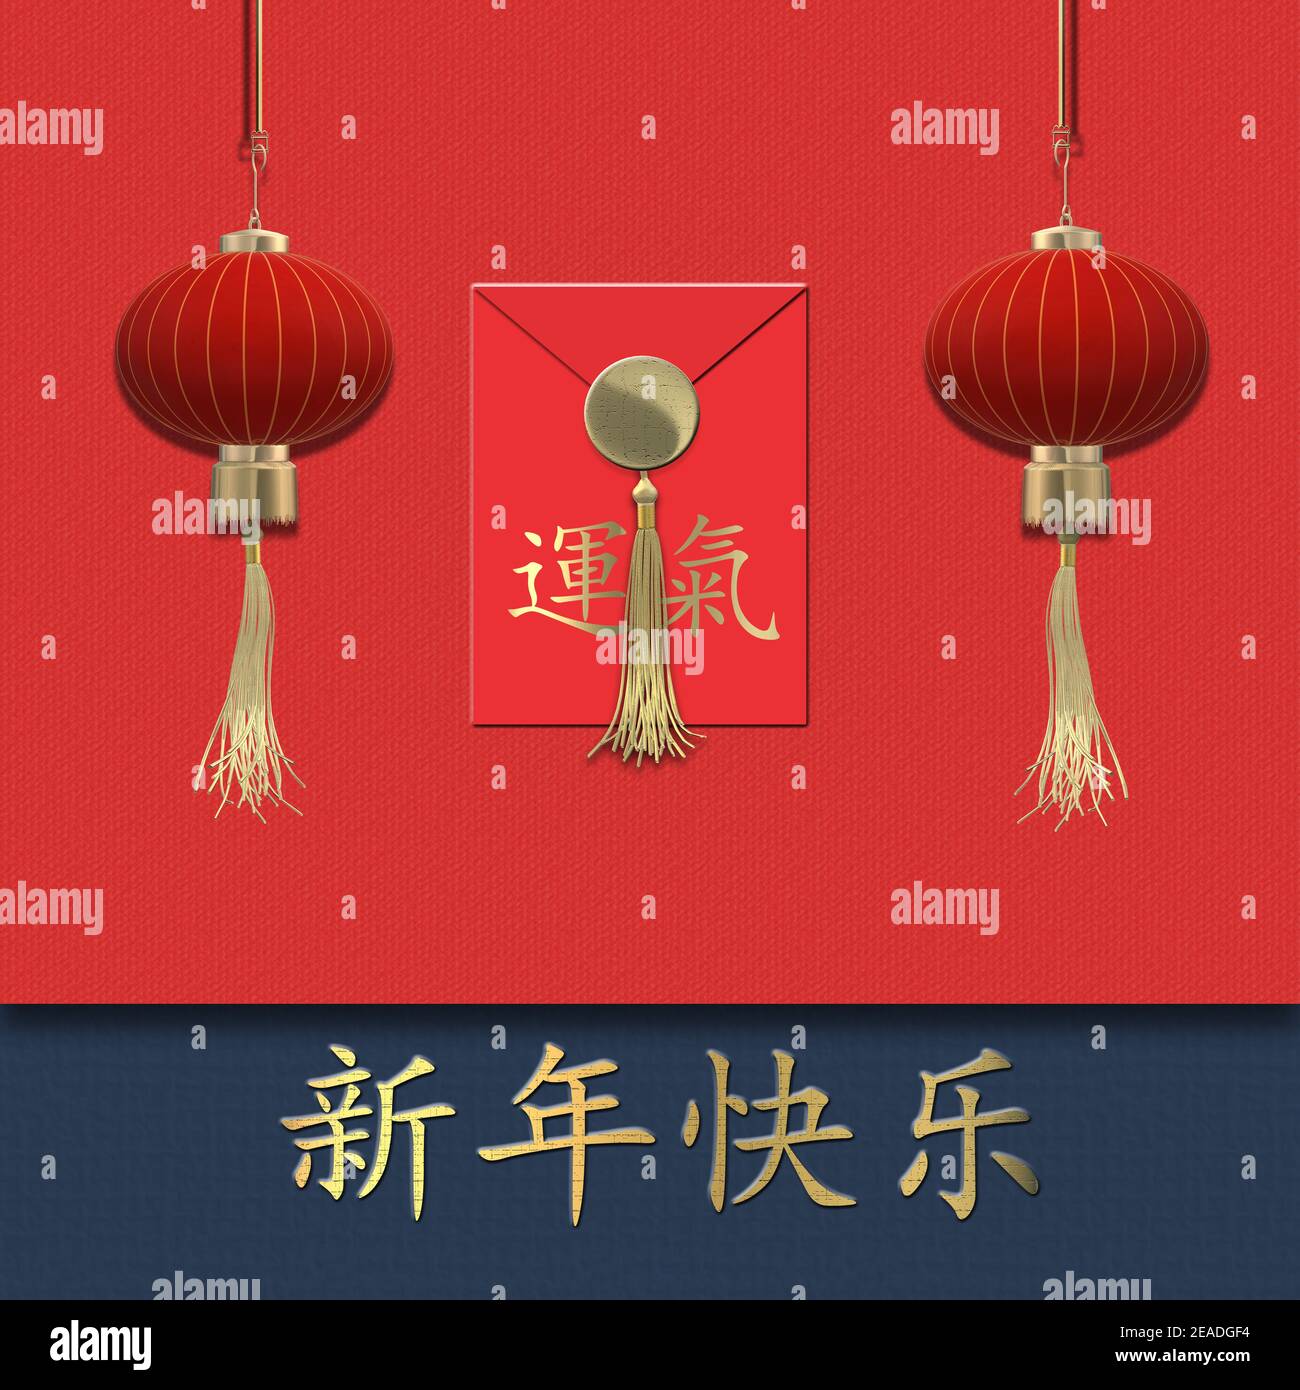 Chinesisches Neujahr 2021 über rot. Rote realistische Laternen. Rot Chinesisch Glück Umschlag mit Text Chinesisch Übersetzung Glück. Text Chinesische Übersetzung glücklich Stockfoto